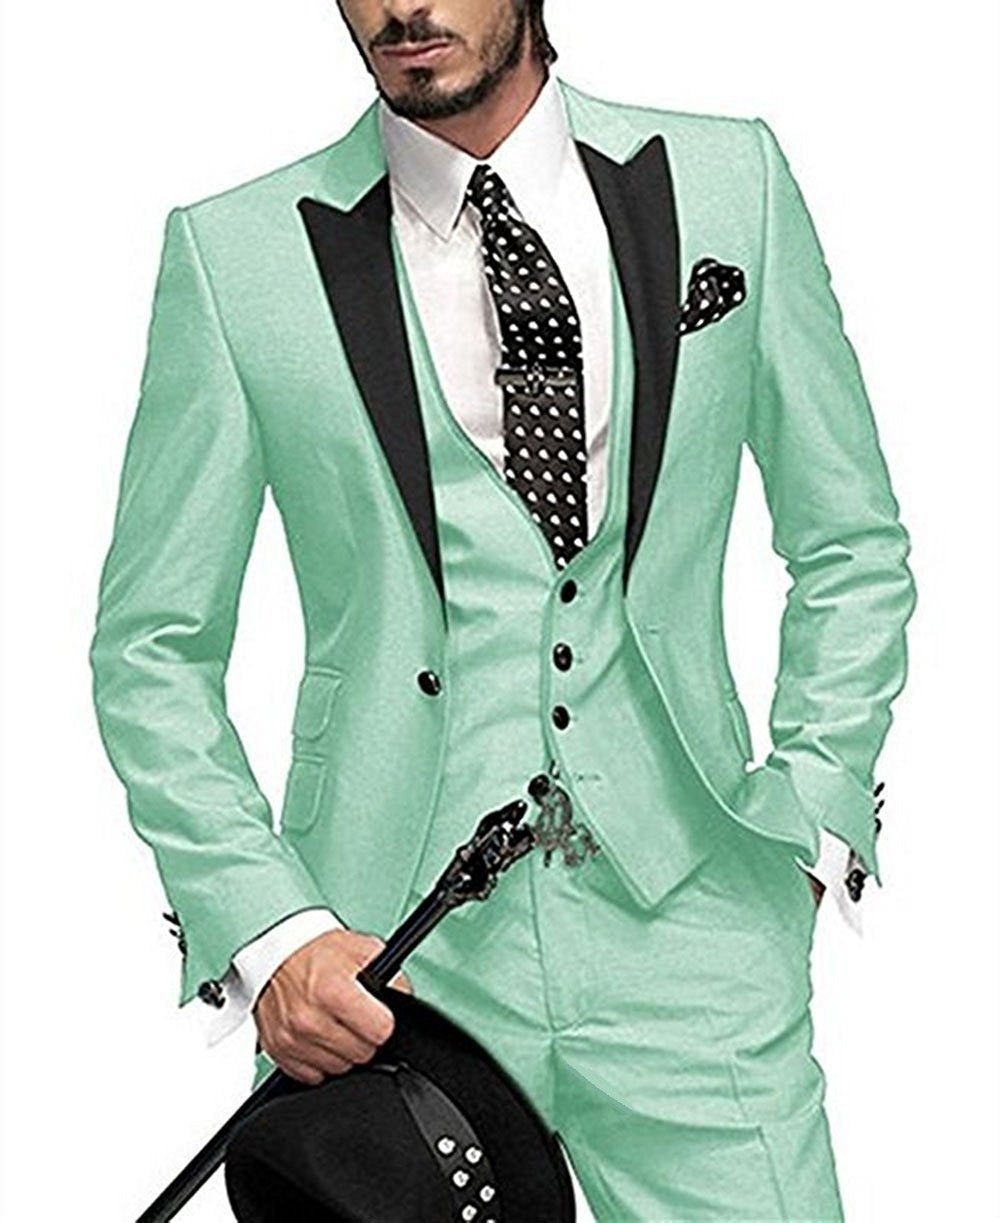 White T Shirt Dress Men芒聙聶S Suit Slim 3 Piece Suit Business Wedding Party  Jacket Vest & Pants Coat - Walmart.com